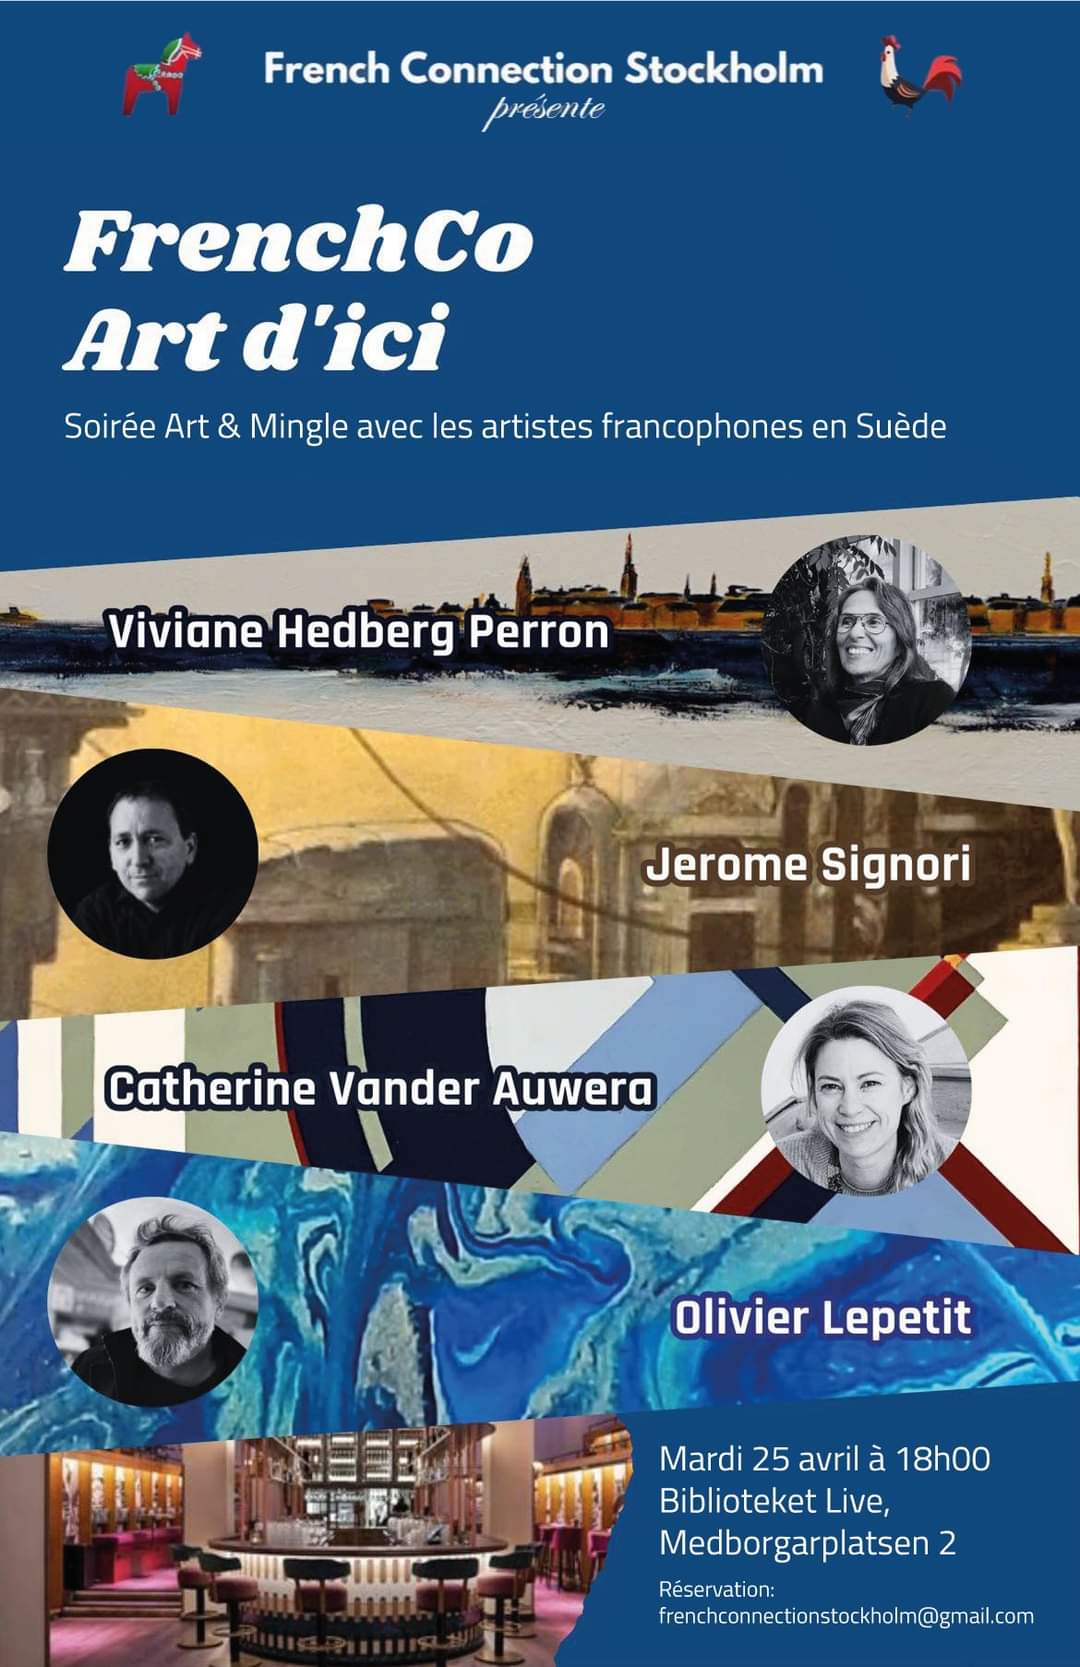 Soirée Art & Mingle avec les artistes francophones en Suède